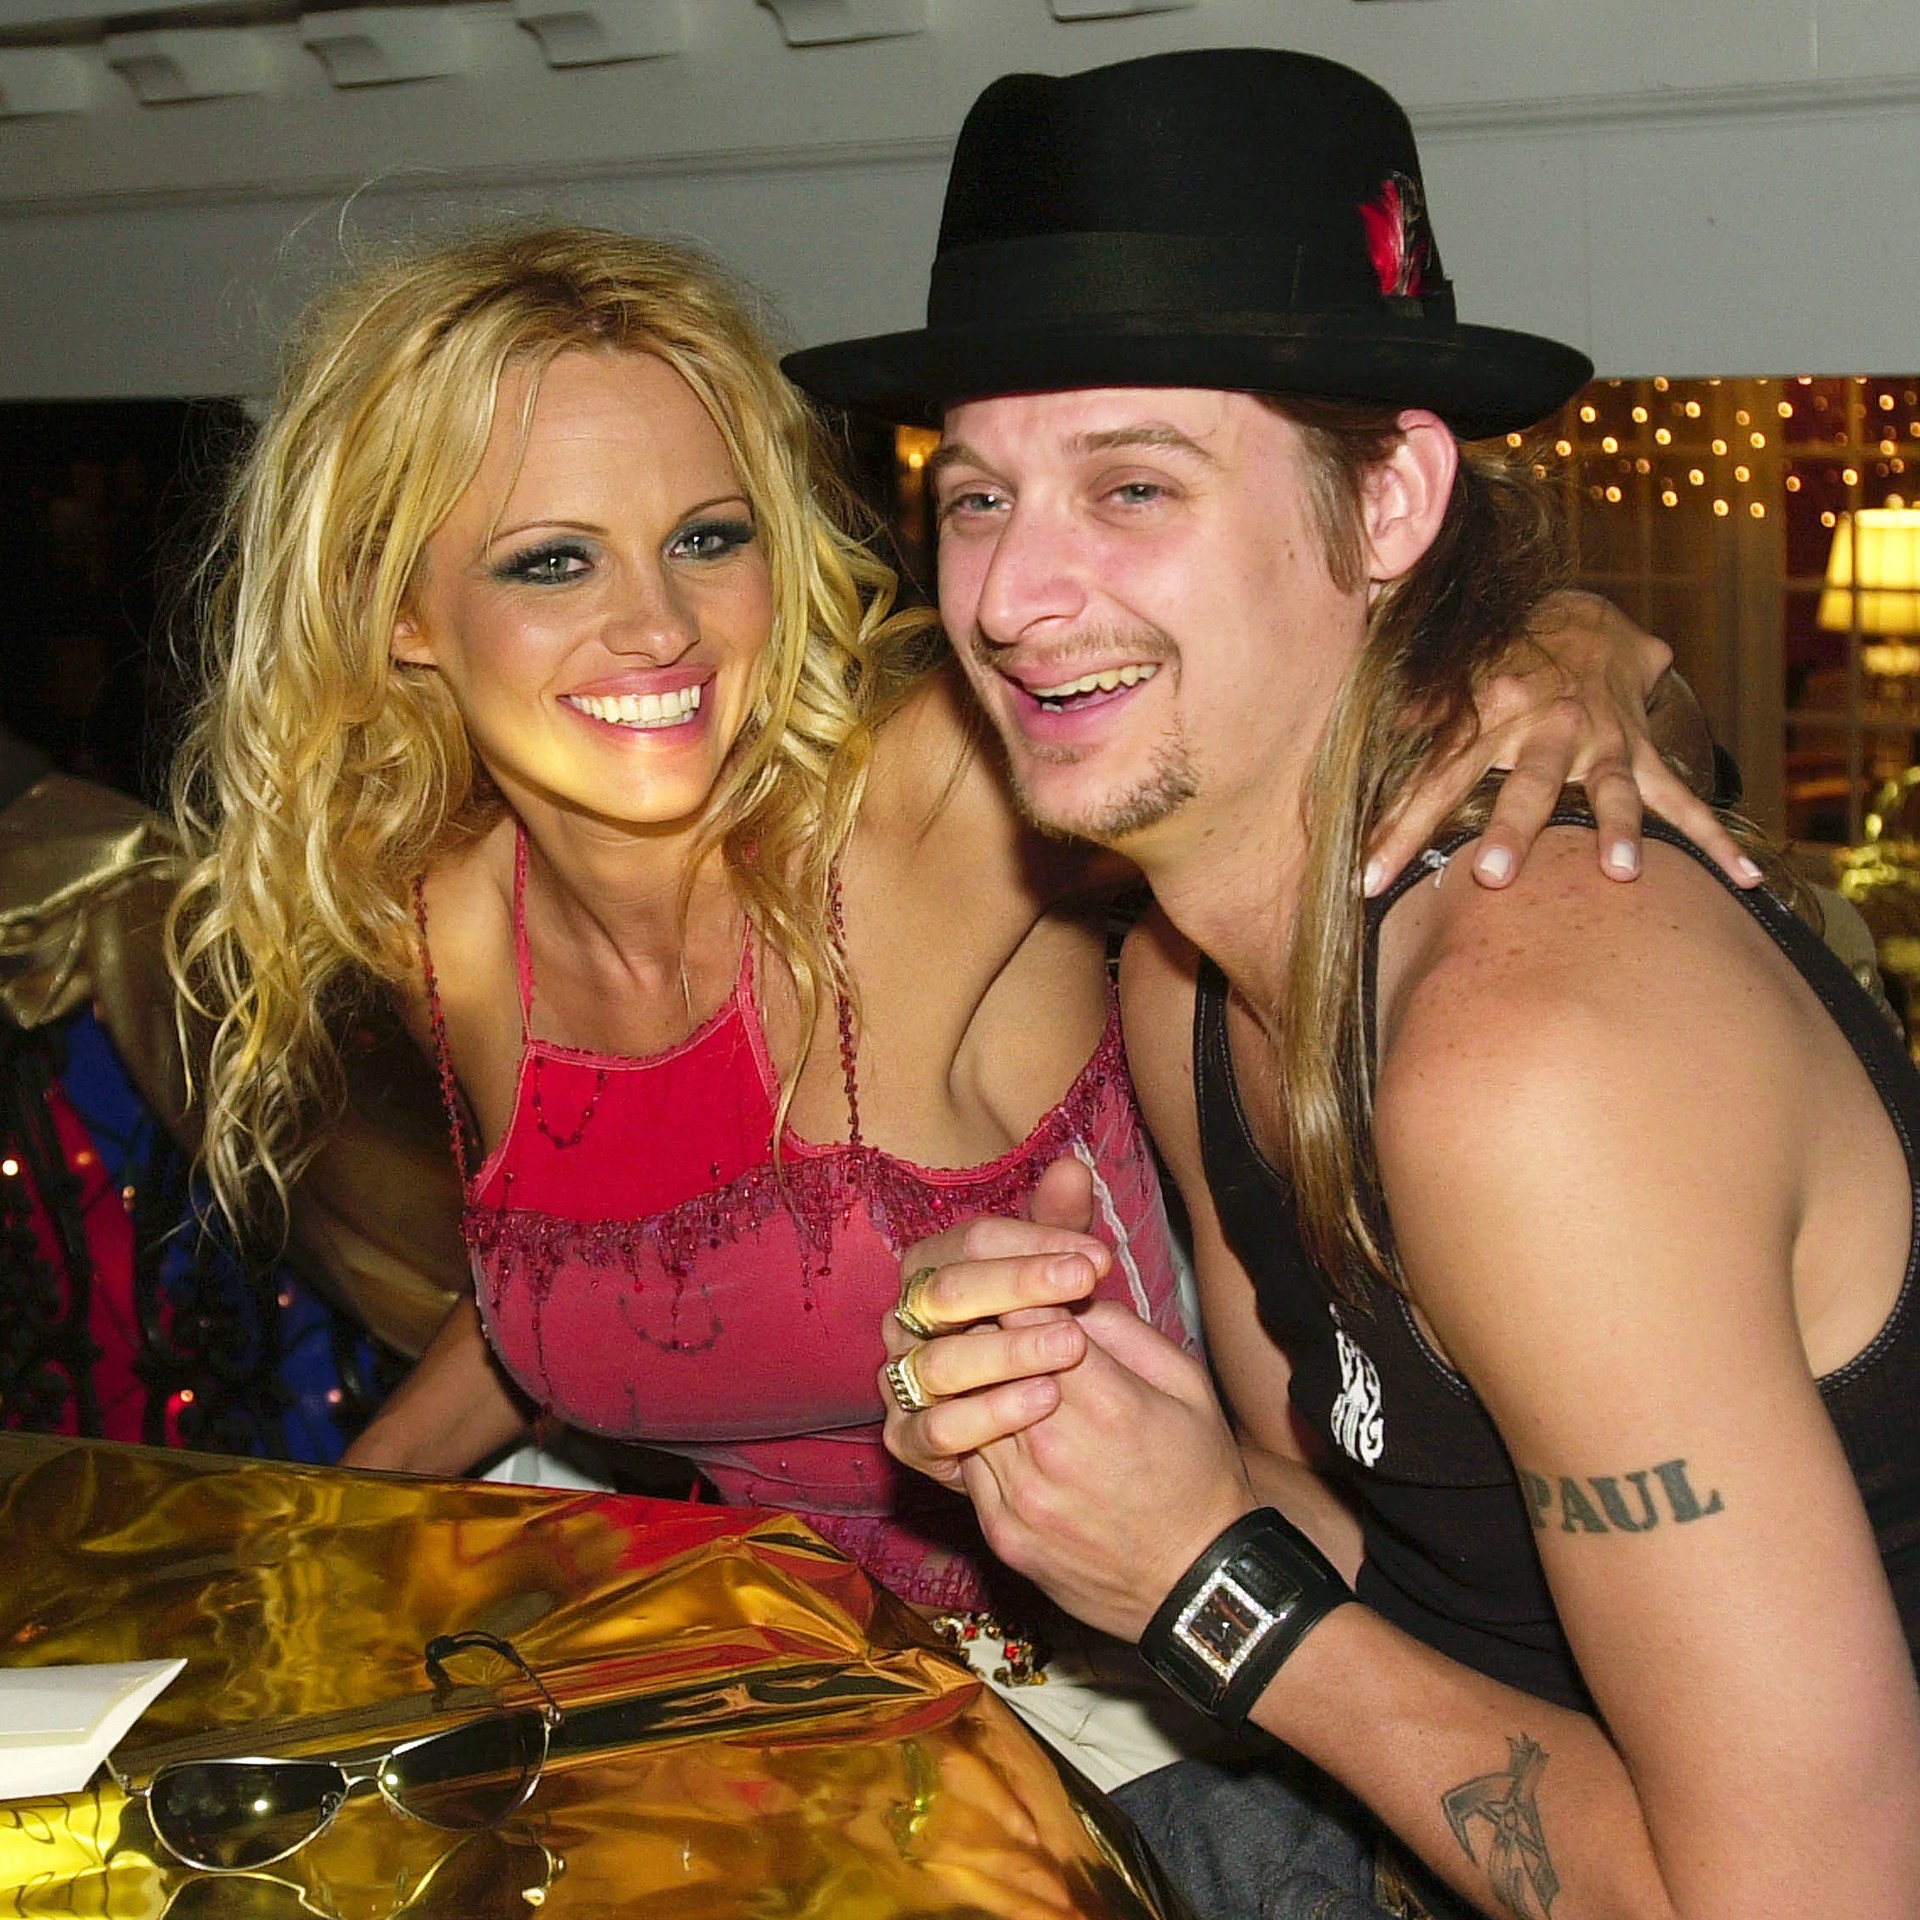 A atriz Pamela Anderson, de 46 anos, e o músico Kid Rock, de 43, romperam o noivado em 2003, depois se casaram em julho de 2006, oficializaram a união em agosto daquele ano e pediram divórcio duas semanas depois disso. (Foto: Getty Images)